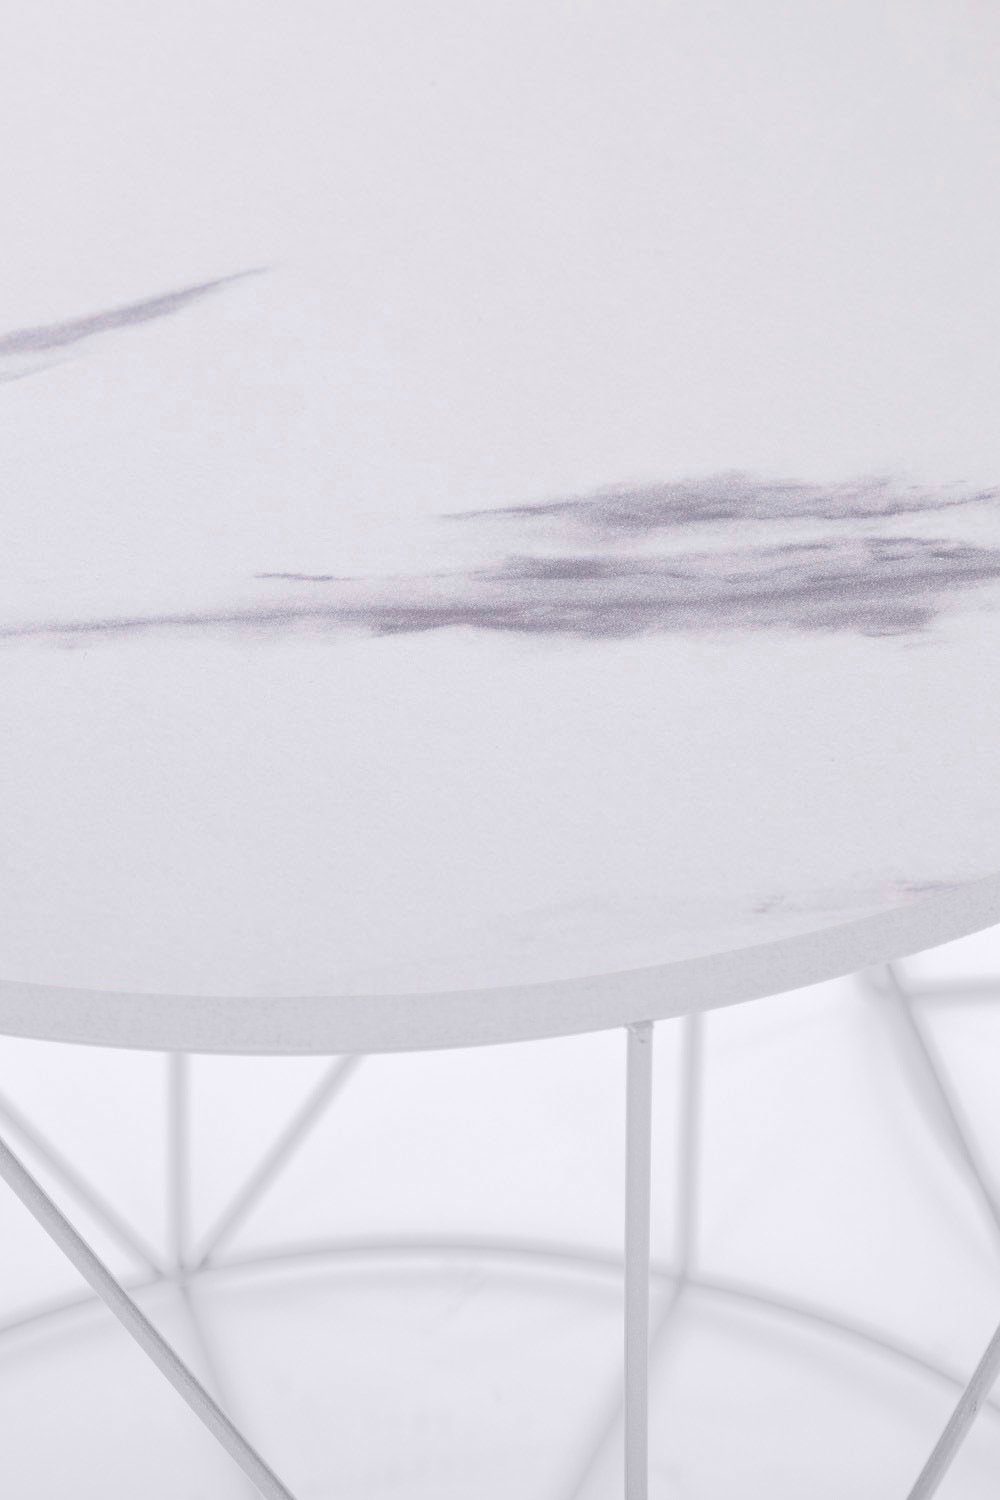 Weiß Skandinavischem Naturbelassene im Platte Flair Weiß/Marmor | Rundini, Design Gestell, Weiß Beistelltisch my Design | lackiertem